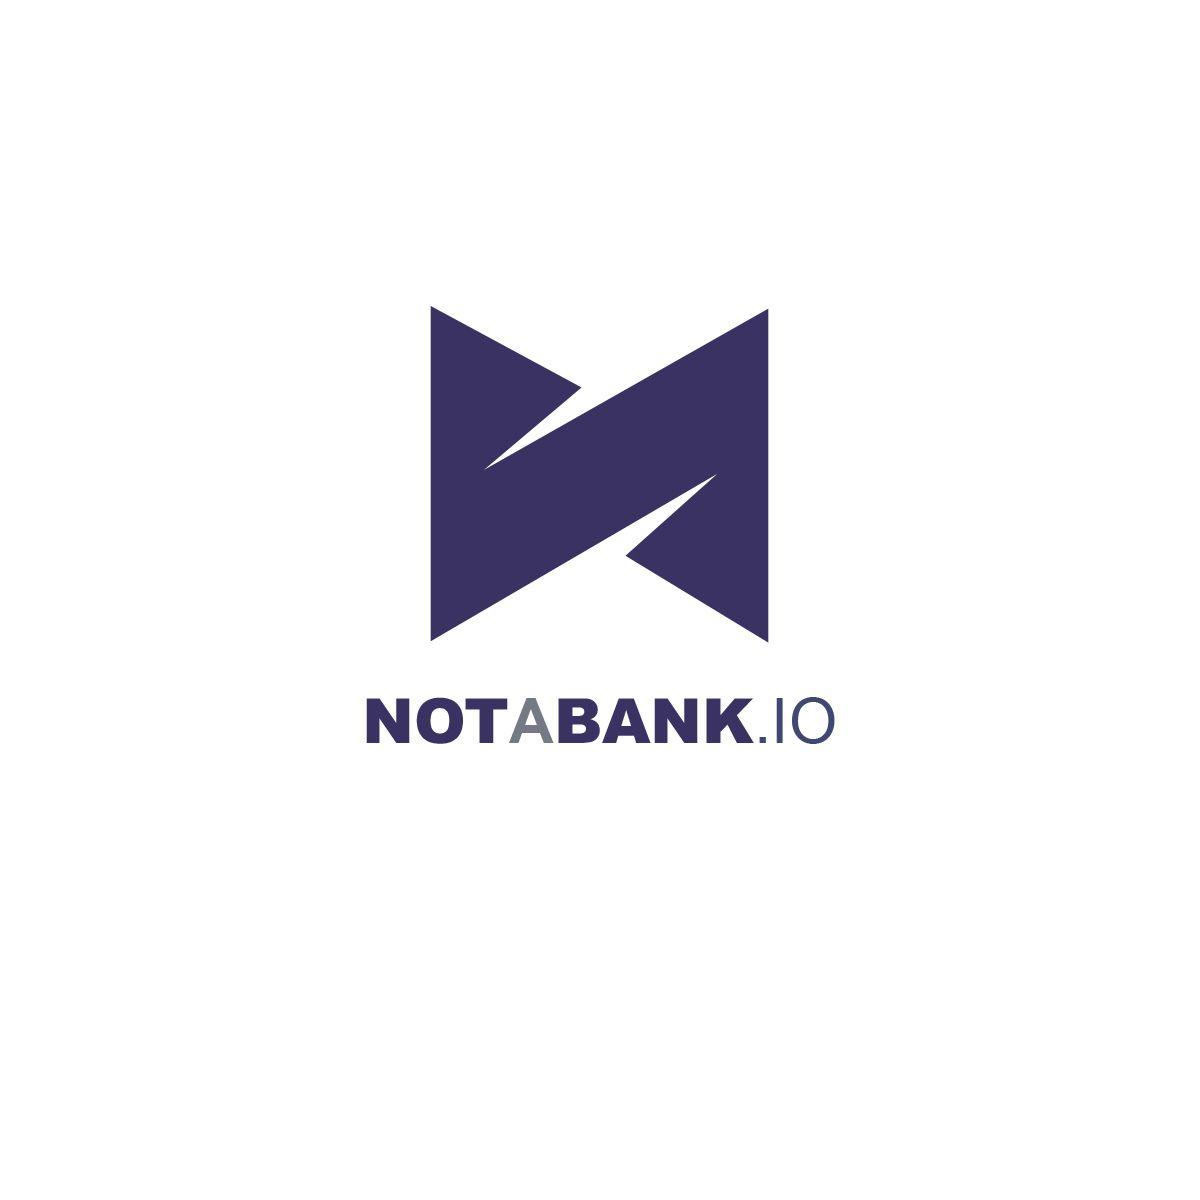 IATA Logo - Logo Design for not a bank.io by hvdesigns | Design #19567387